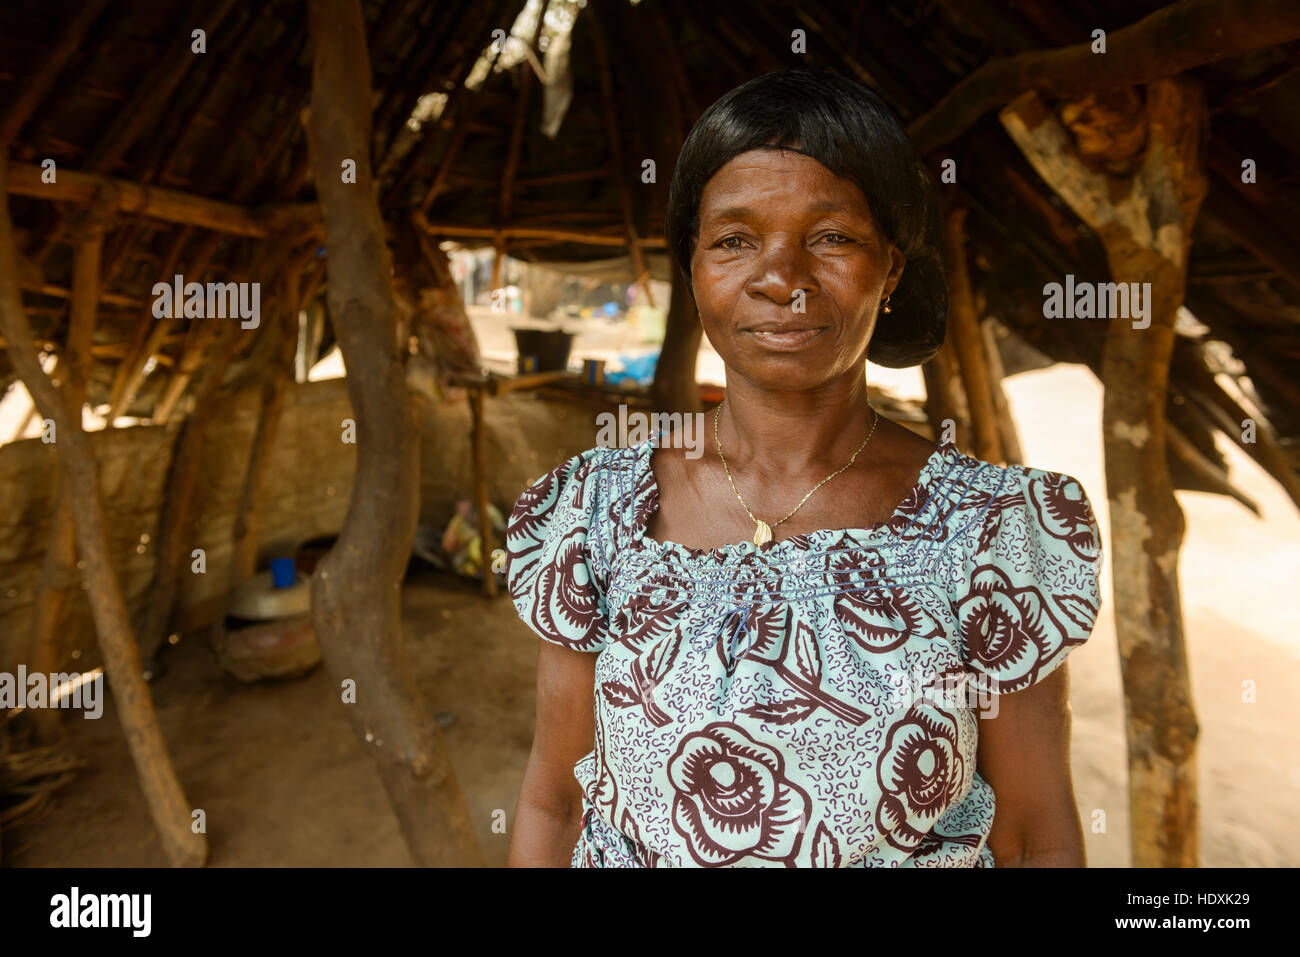 Porträts des ivorischen Volkes, Cote D'Ivore (Elfenbeinküste) Stockfoto